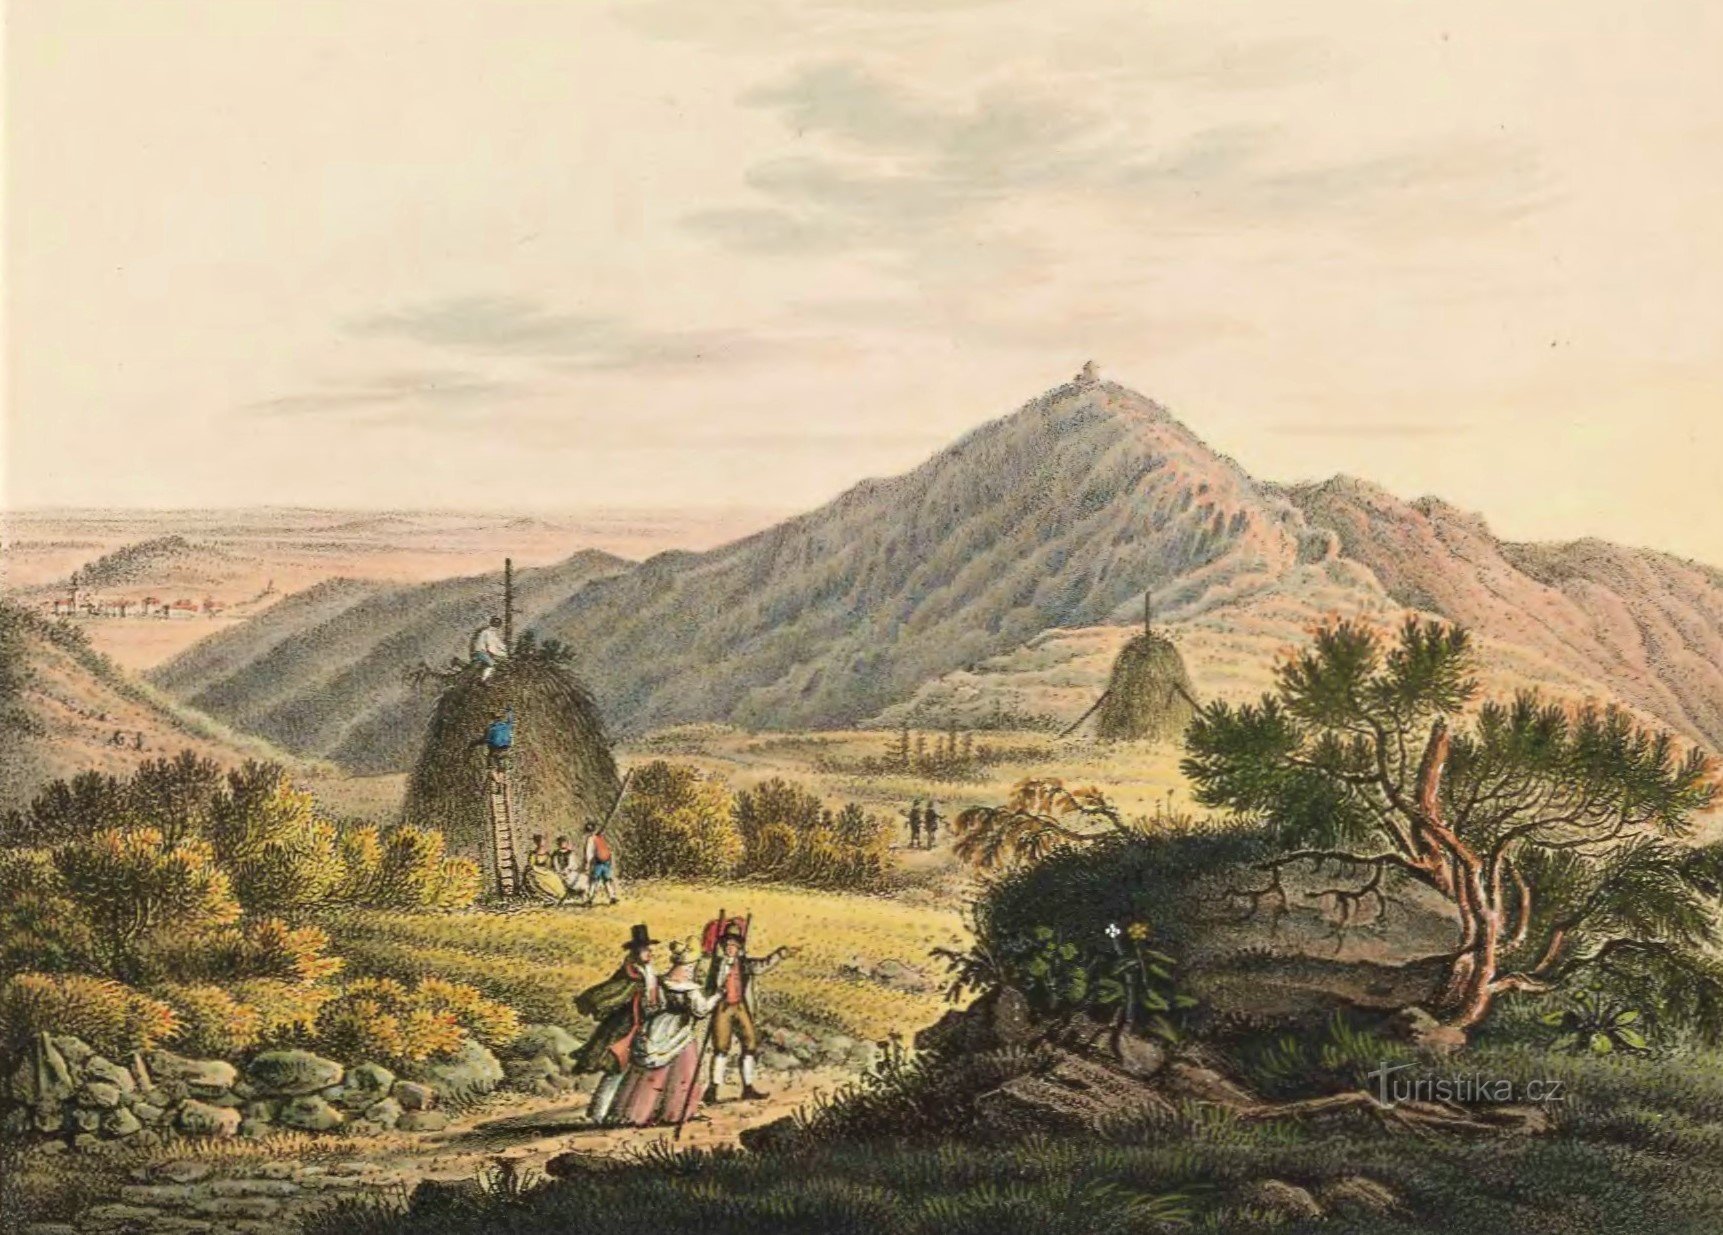 Uma vista de Sněžka do lado da Silésia desde o início do século XIX